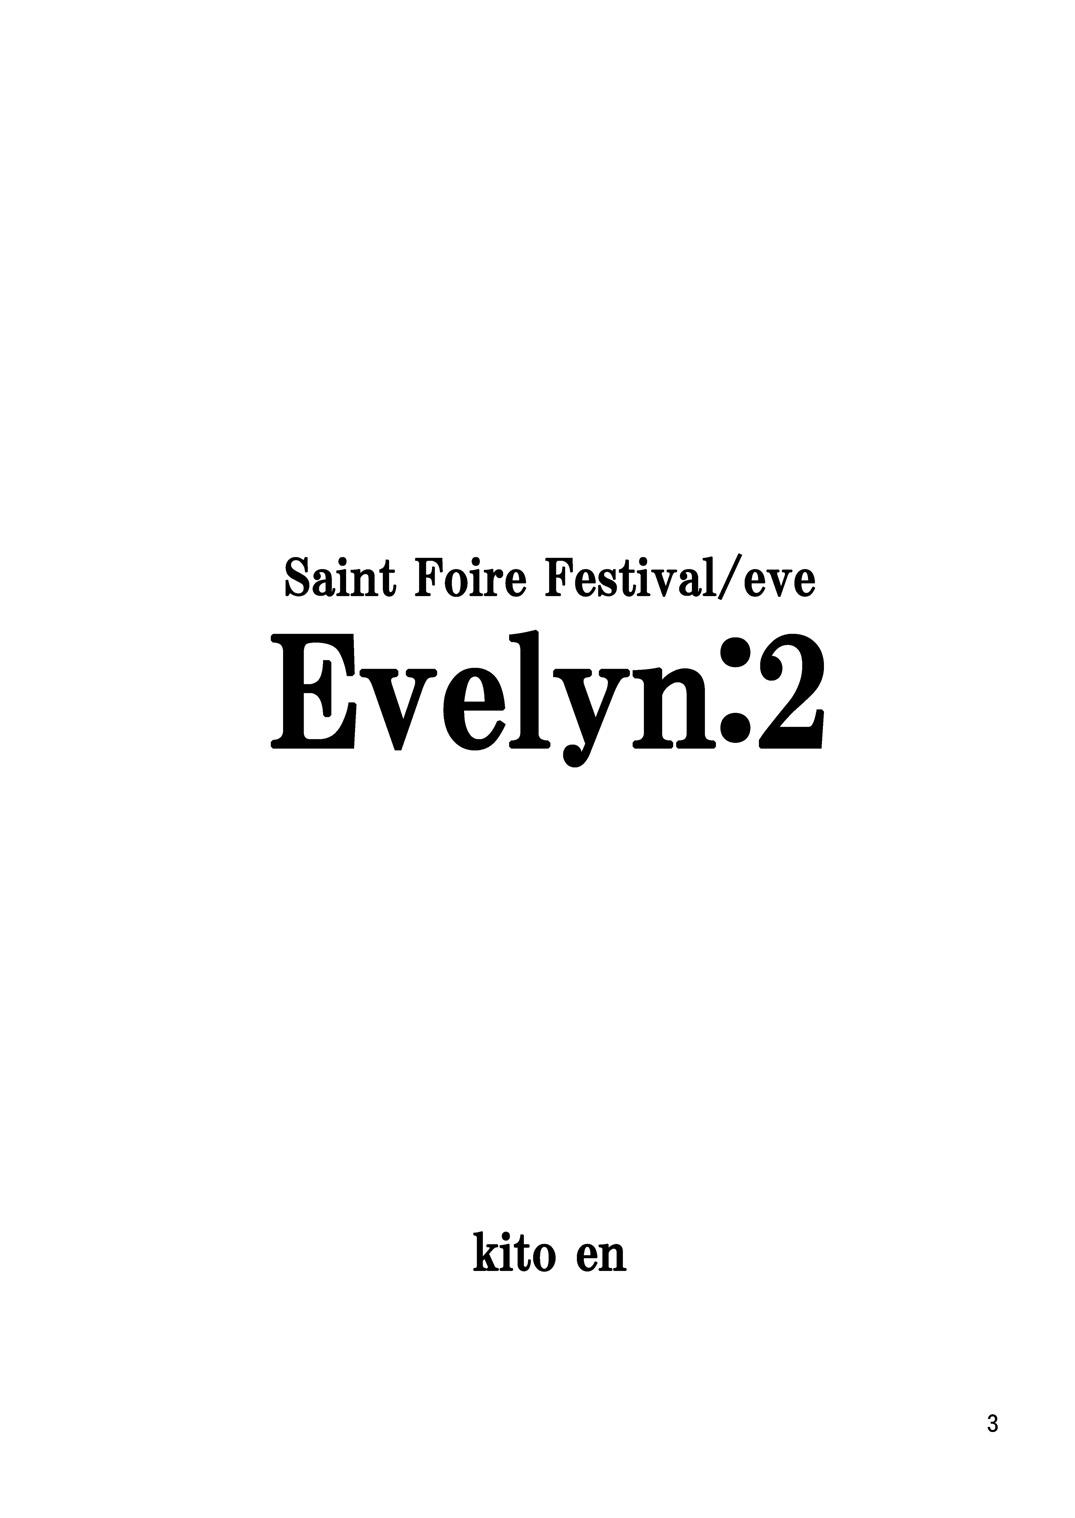 Saint Foire Festival Eve Evelyn:2 1